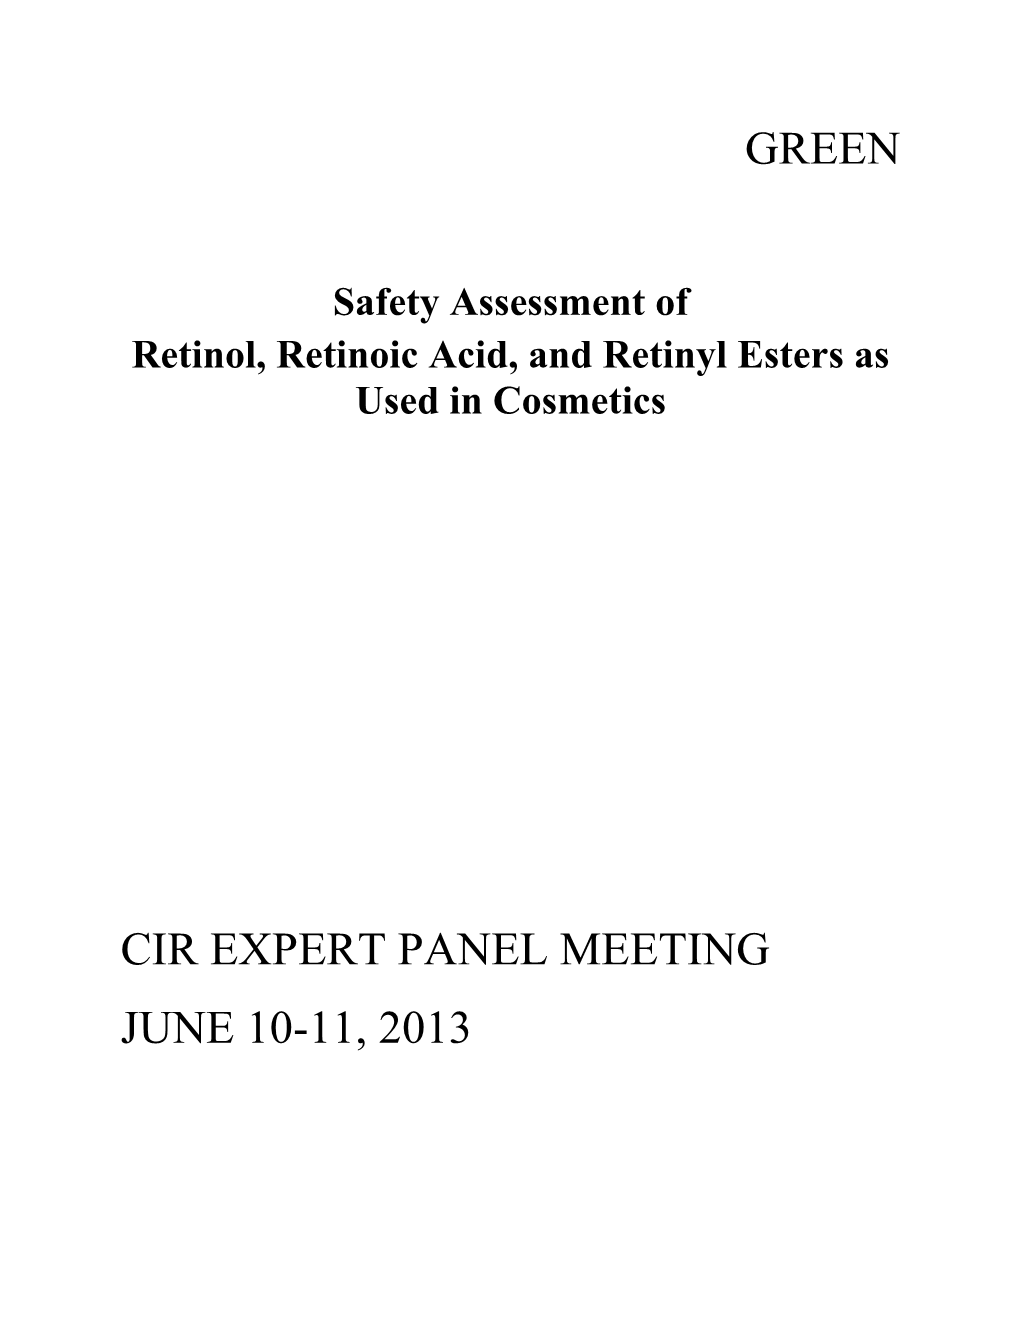 Green Cir Expert Panel Meeting June 10-11, 2013